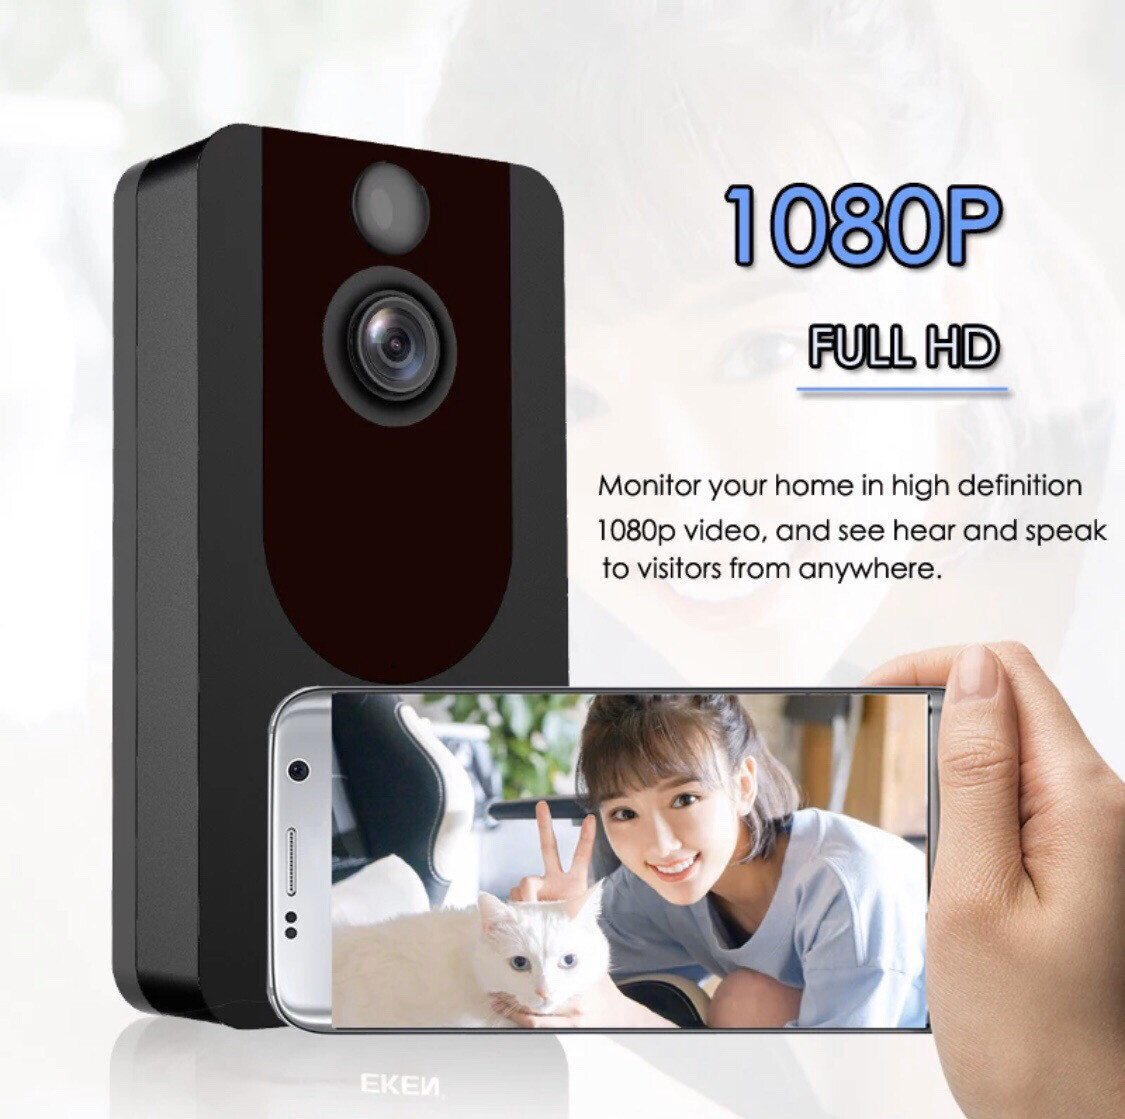 Eken V7 1080p Smart WiFi Video Doorbell